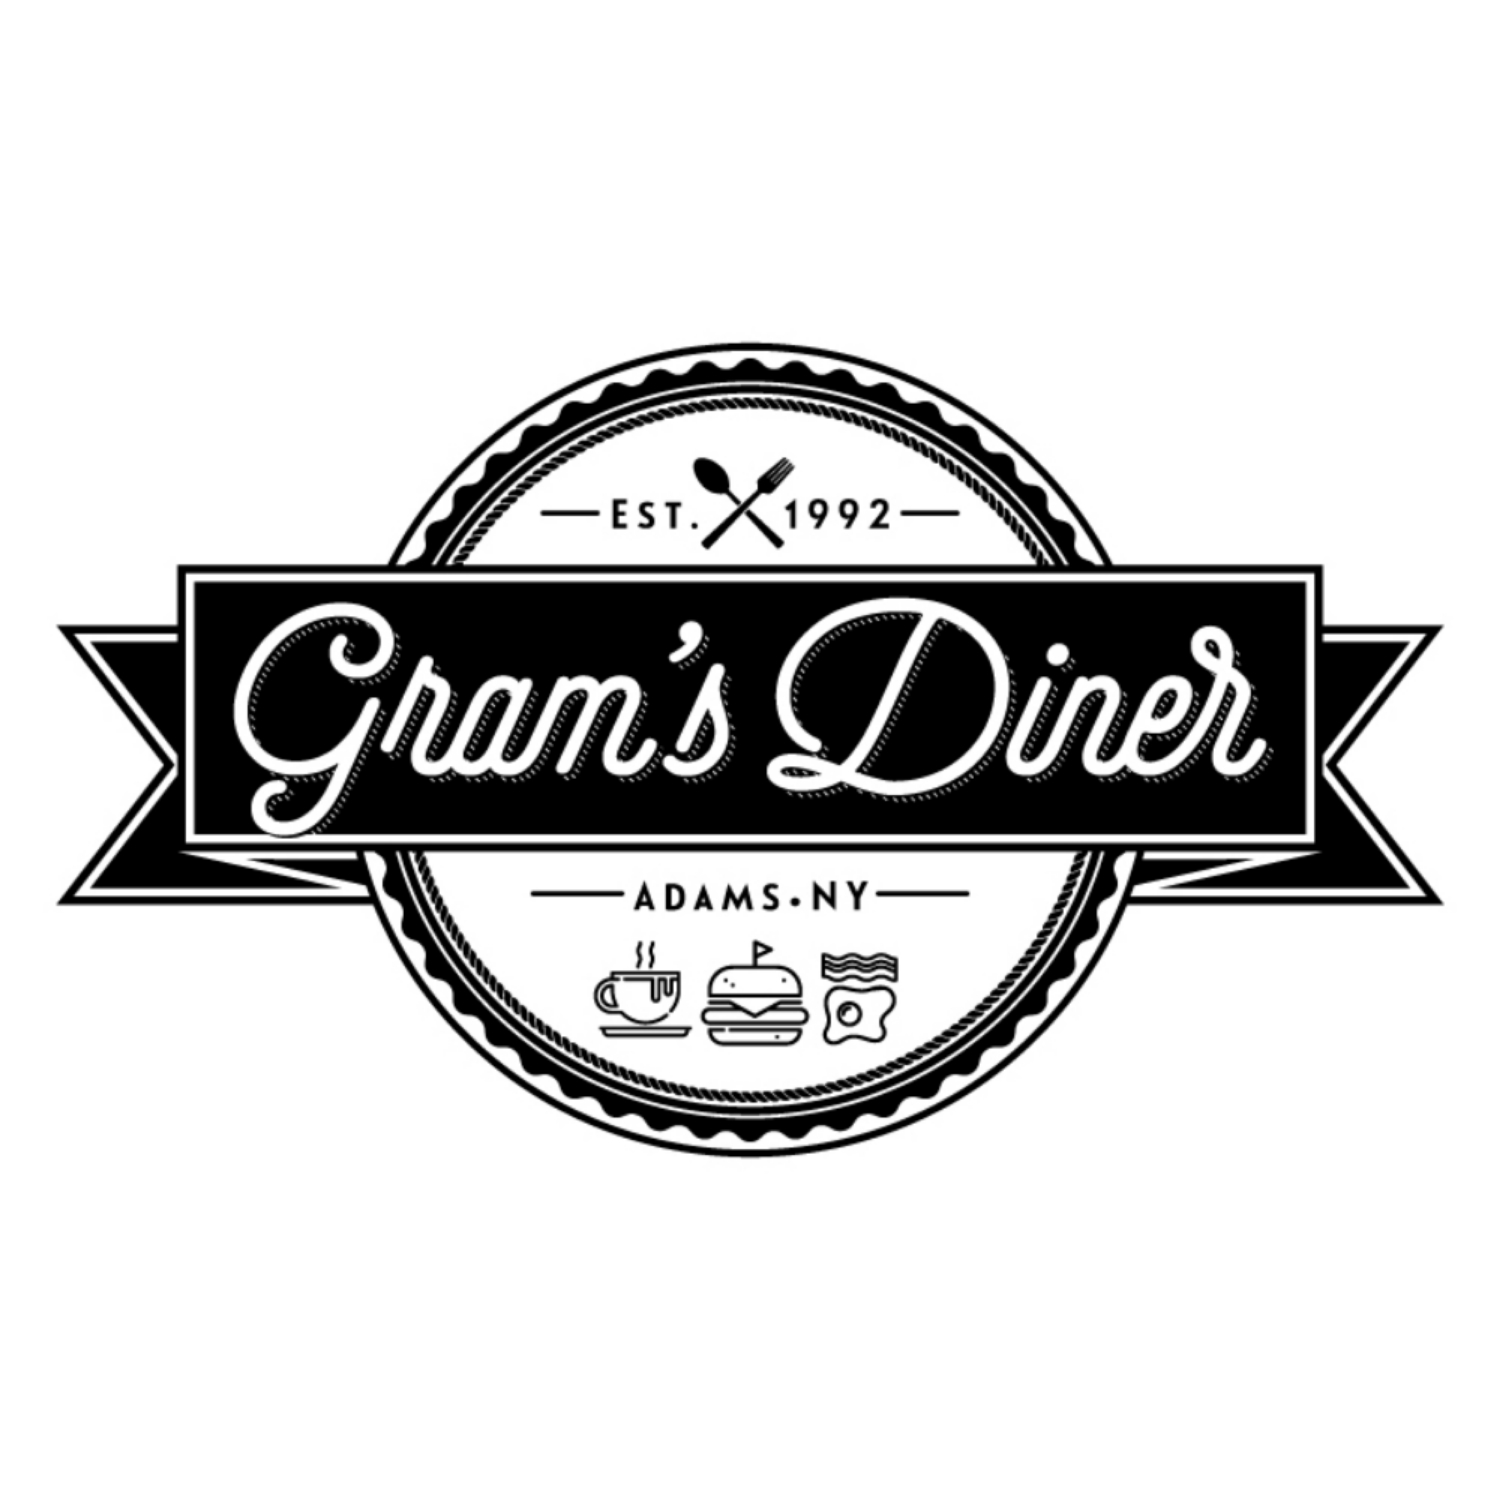 Gram's Diner